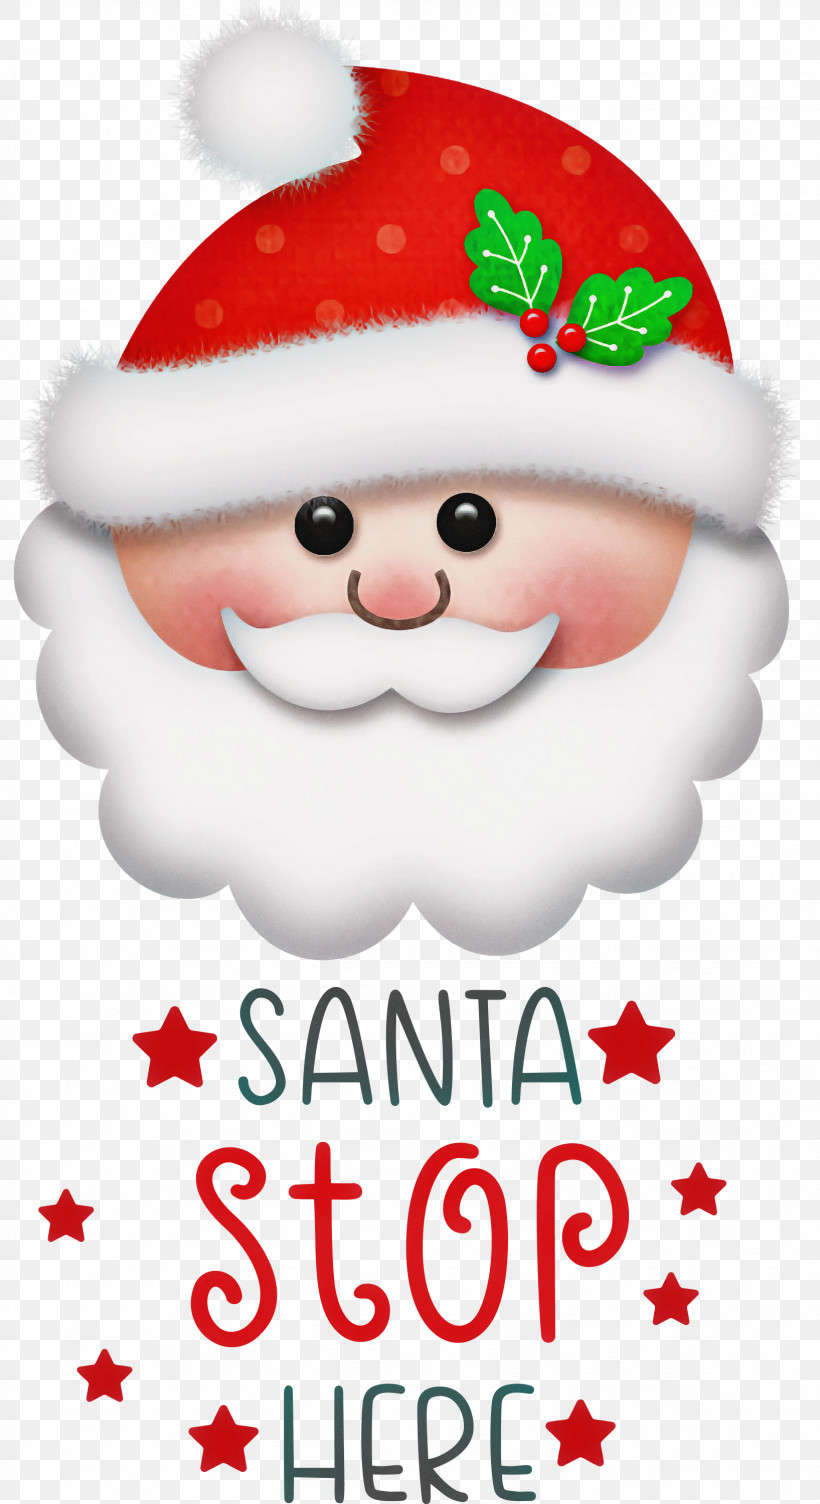 Santa Stop Here Santa Christmas, PNG, 1635x3000px, Santa Stop Here, Album, Christmas, Christmas Carol, Christmas Day Download Free